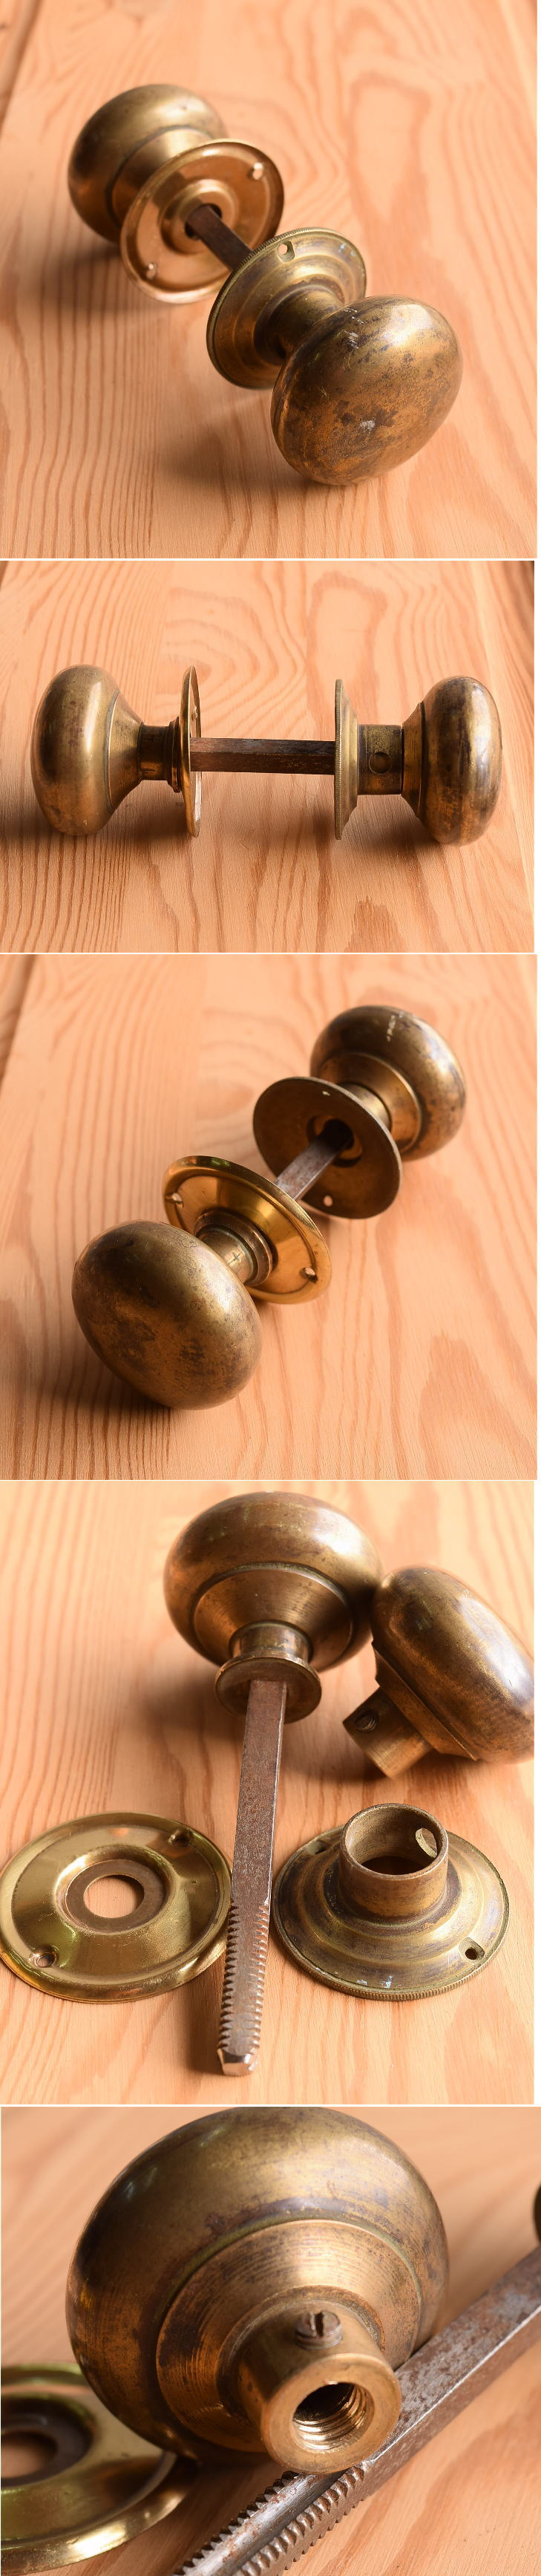 イギリス アンティーク 真鍮製 ドアノブ 建具金物 握り玉 11265